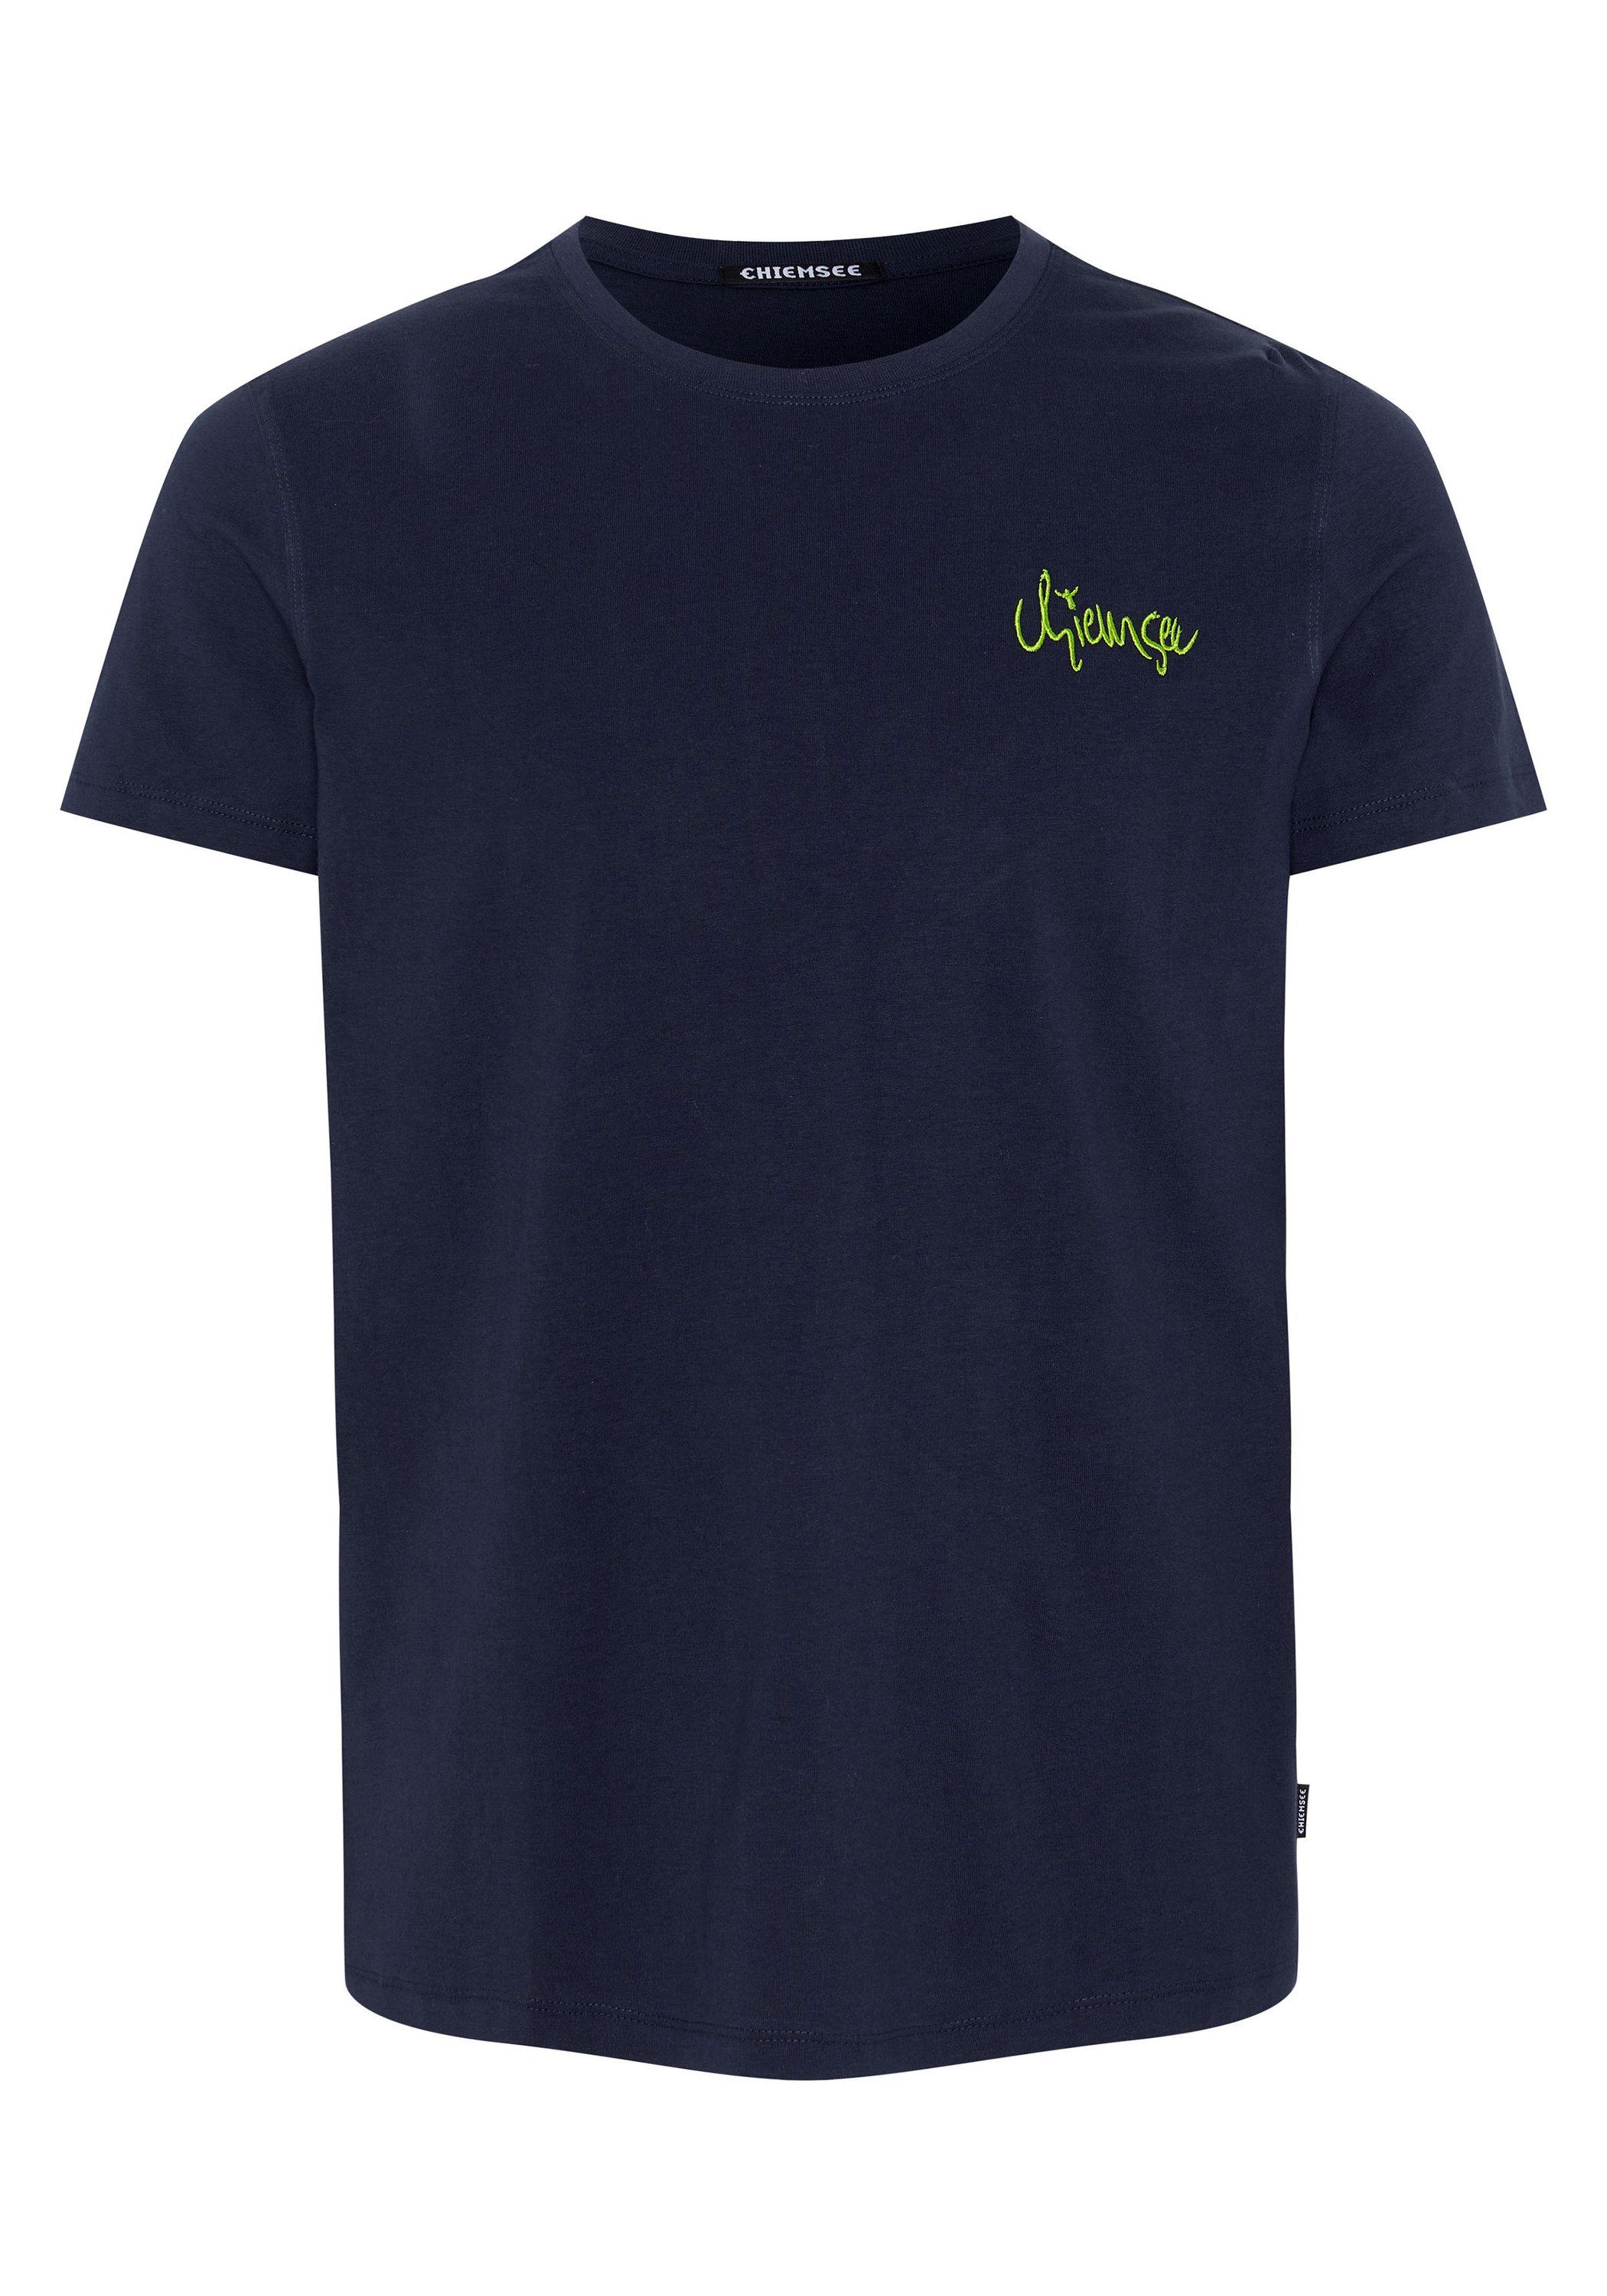 Chiemsee Print-Shirt T-Shirt mit Blattmotiv und Schriftzug 1 Night Sky